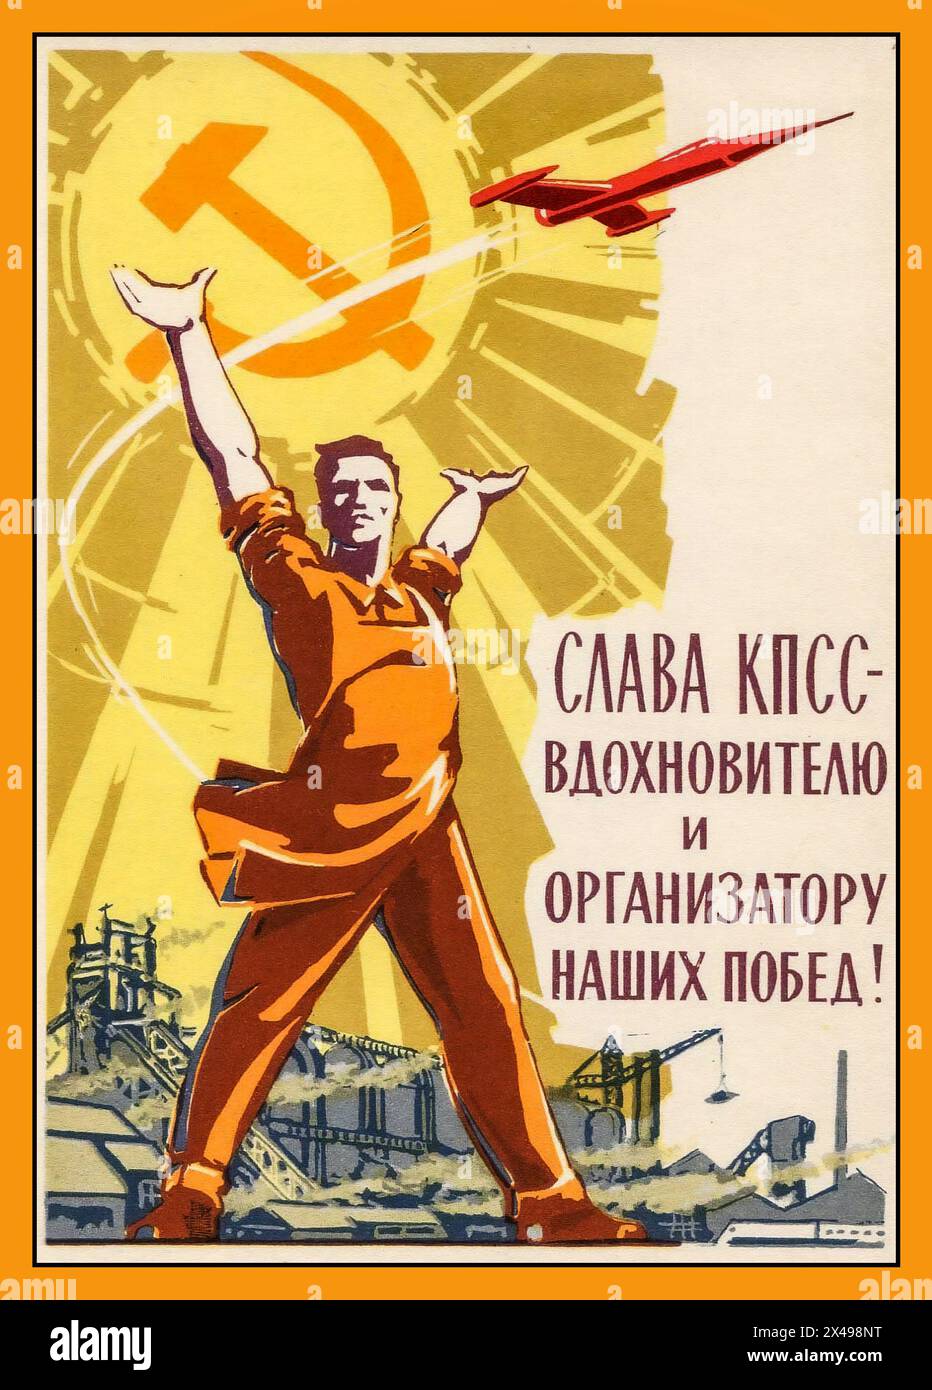 LA GLORIA del poster della propaganda russa sovietica del 1960 ALLA CPSU L'ORGANIZZATORE ISPIRATO DEL trionfo sovietico nello spazio DELLE NOSTRE VITTORIE. Il Partito Comunista dell'Unione Sovietica (CPSU), in alcuni punti conosciuto come Partito Comunista Russo. URSS Russia Unione Sovietica Foto Stock